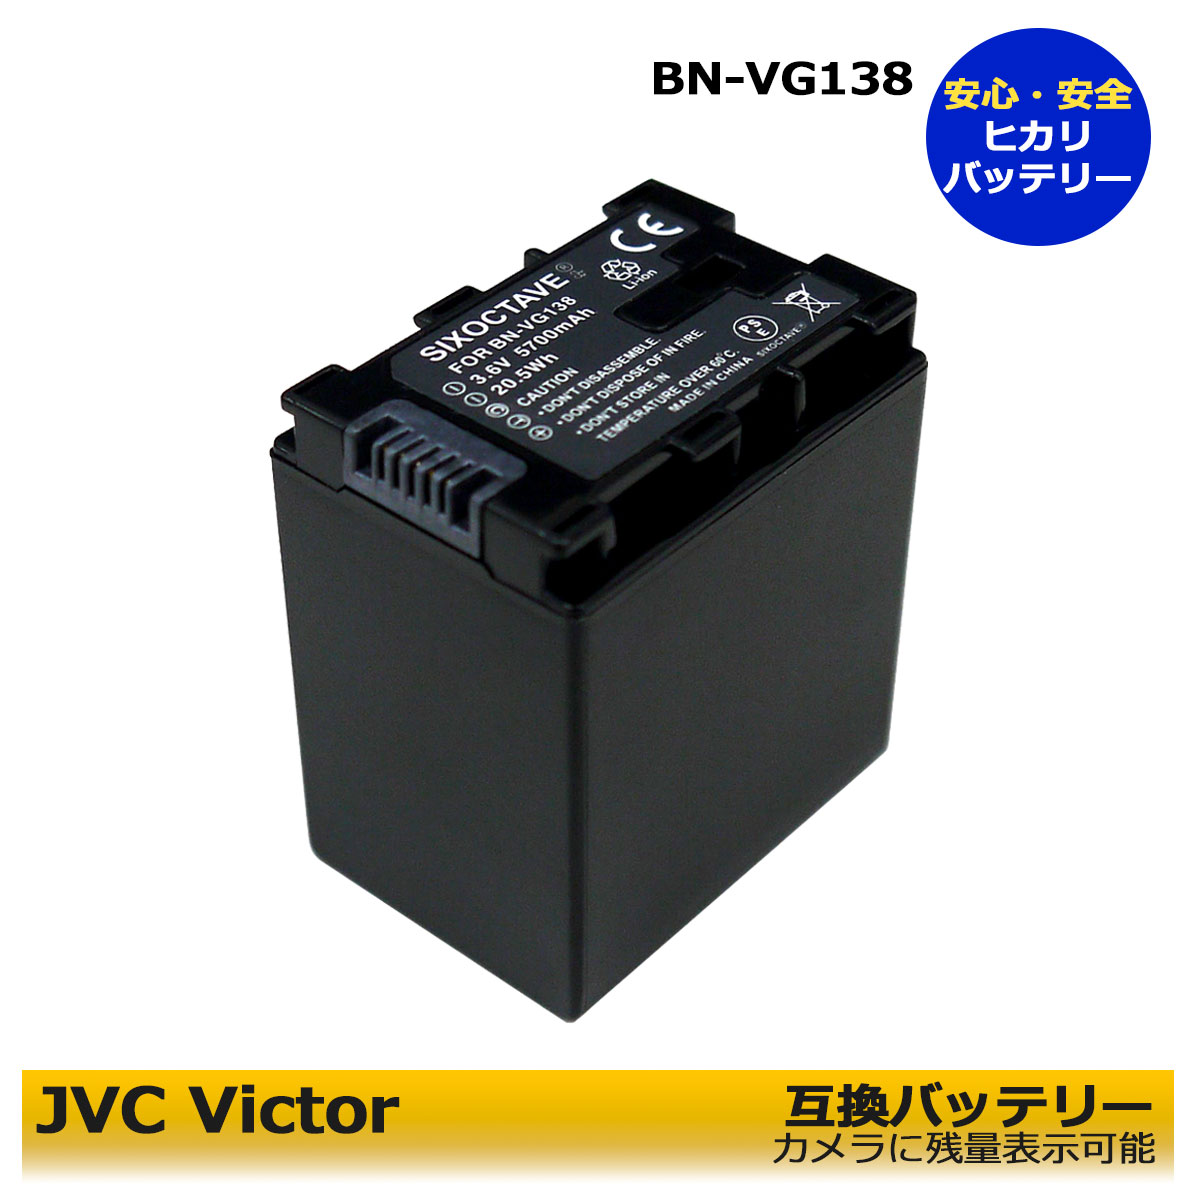 【国内配送】 驚きの値段 互換バッテリー 残量表示可能純正 互換充電器でも充電可能大容量バッテリー BN-VG138 BN-VG129 ≪あす楽対応≫送料無料 Jvc Victor ビクター 1個 純正充電器で充電可能 残量表示可能 GZ-HM33 GZ-HM50 GZ-HM99 GZ-HM133 GZ-HM177 GZ-HM350 GZ-HM390 GZ-HM438 GZ-HM450 GZ-HM460 holzdesign-lauken.de holzdesign-lauken.de